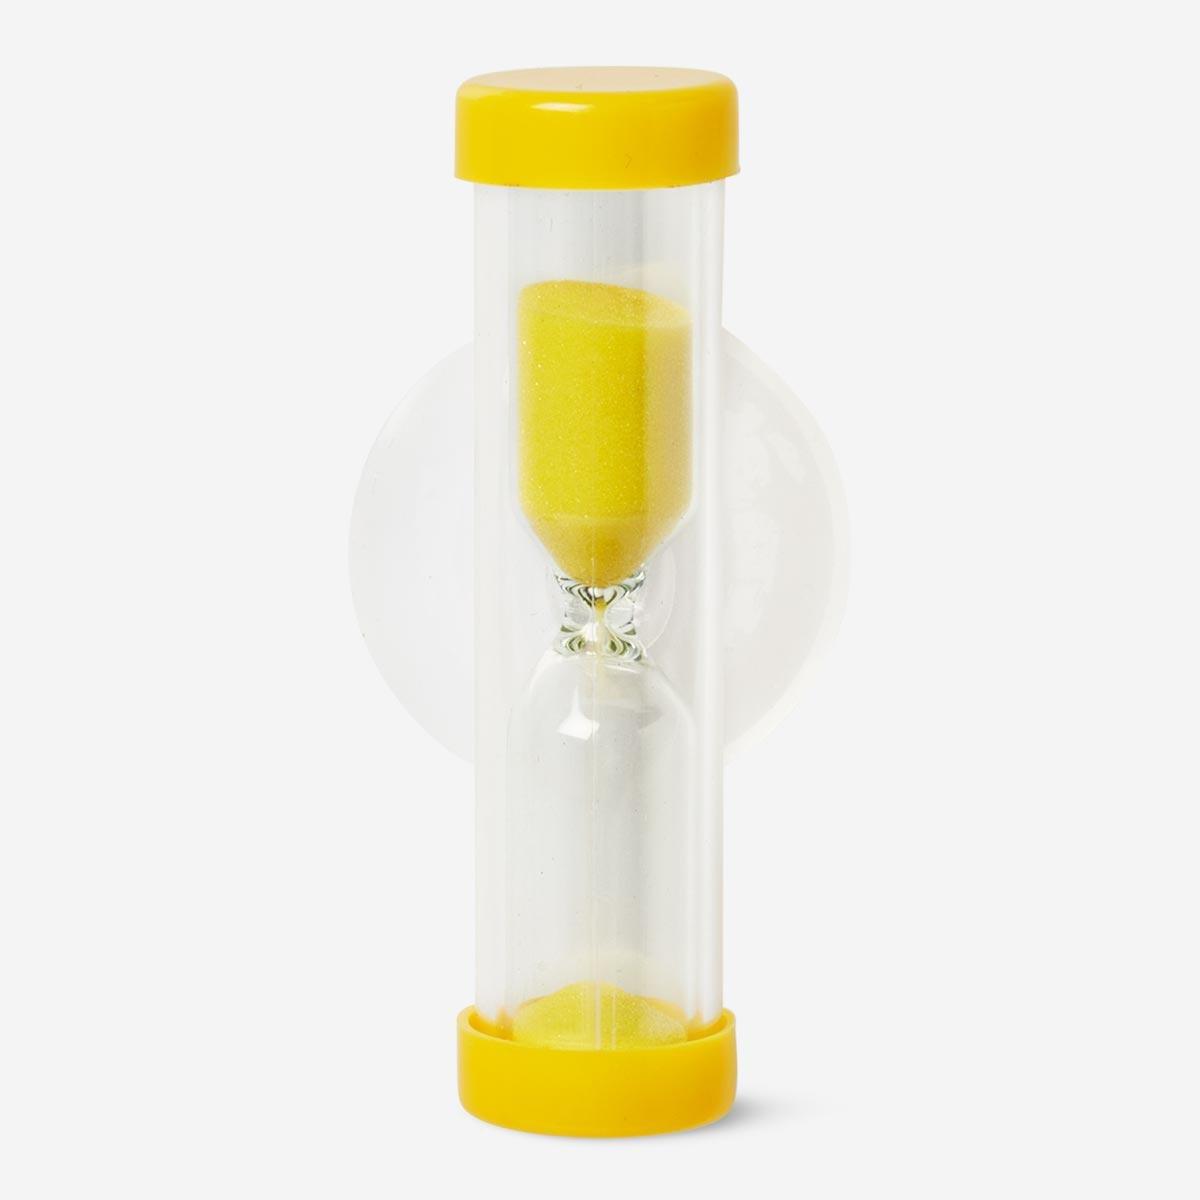 Yellow brush-your-teeth sand hourglass